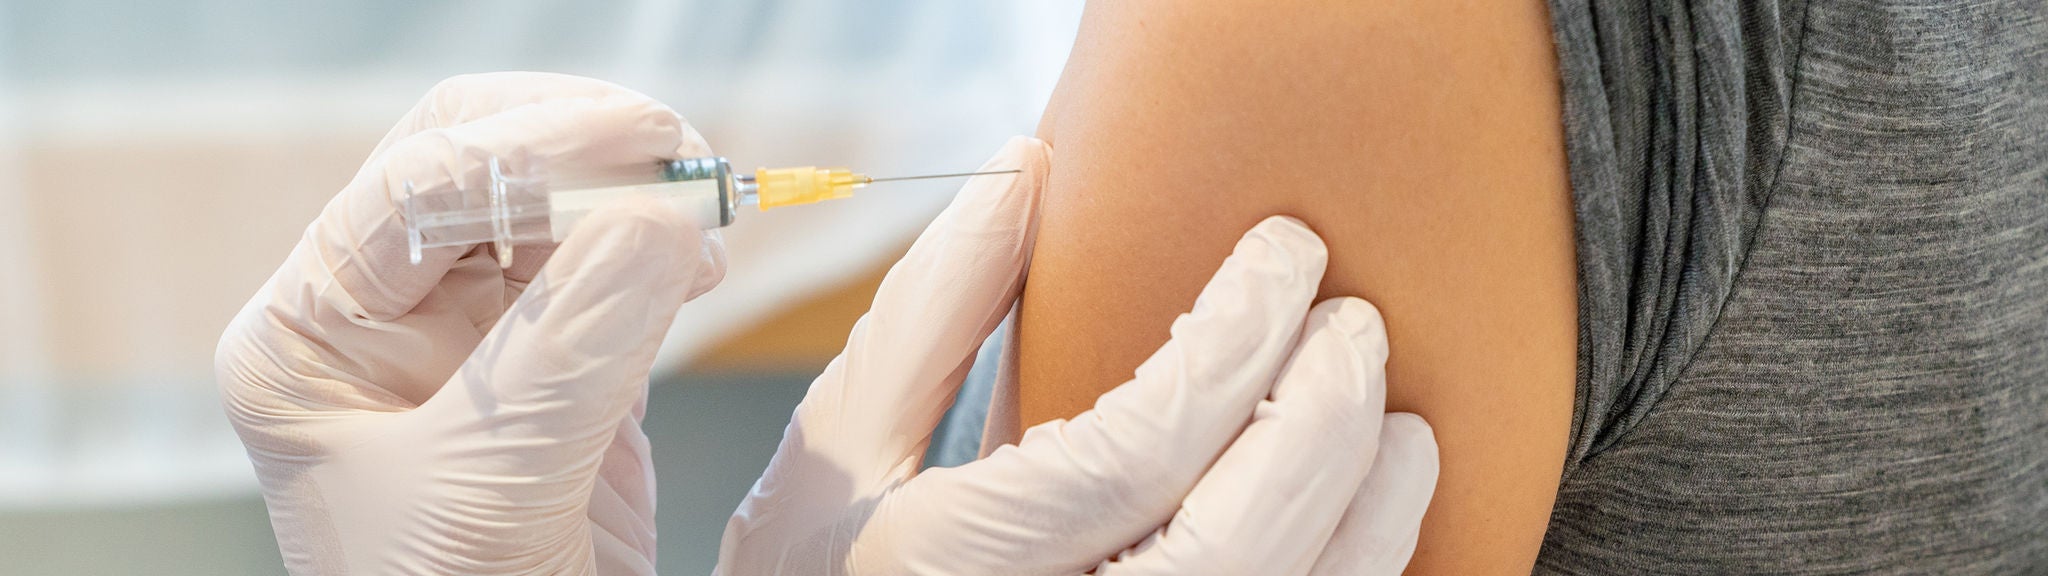 Impfstoff wird mit einer Spritze injiziert.